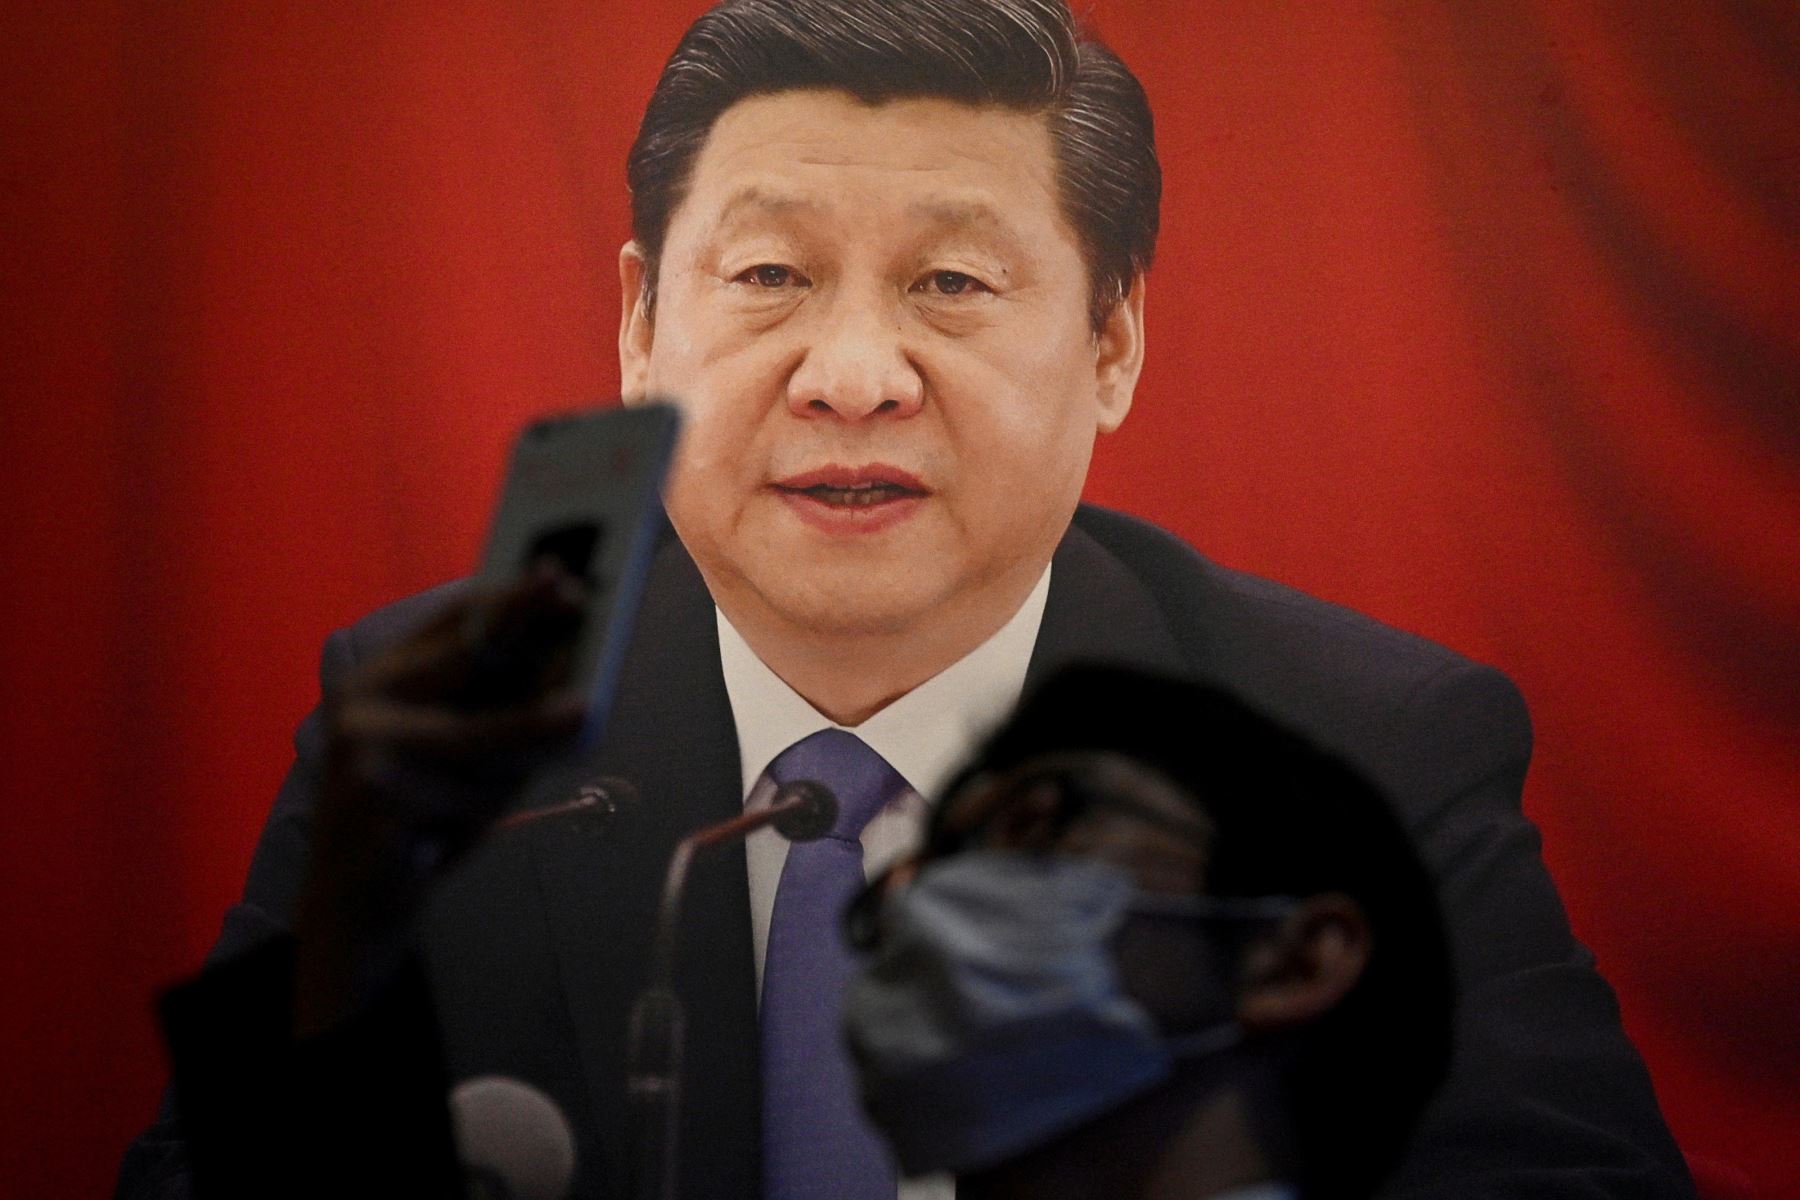 El centenario del PCC motivó desde hace meses una intensa campaña de propaganda, que culminó el lunes con un gran espectáculo. Foto: AFP